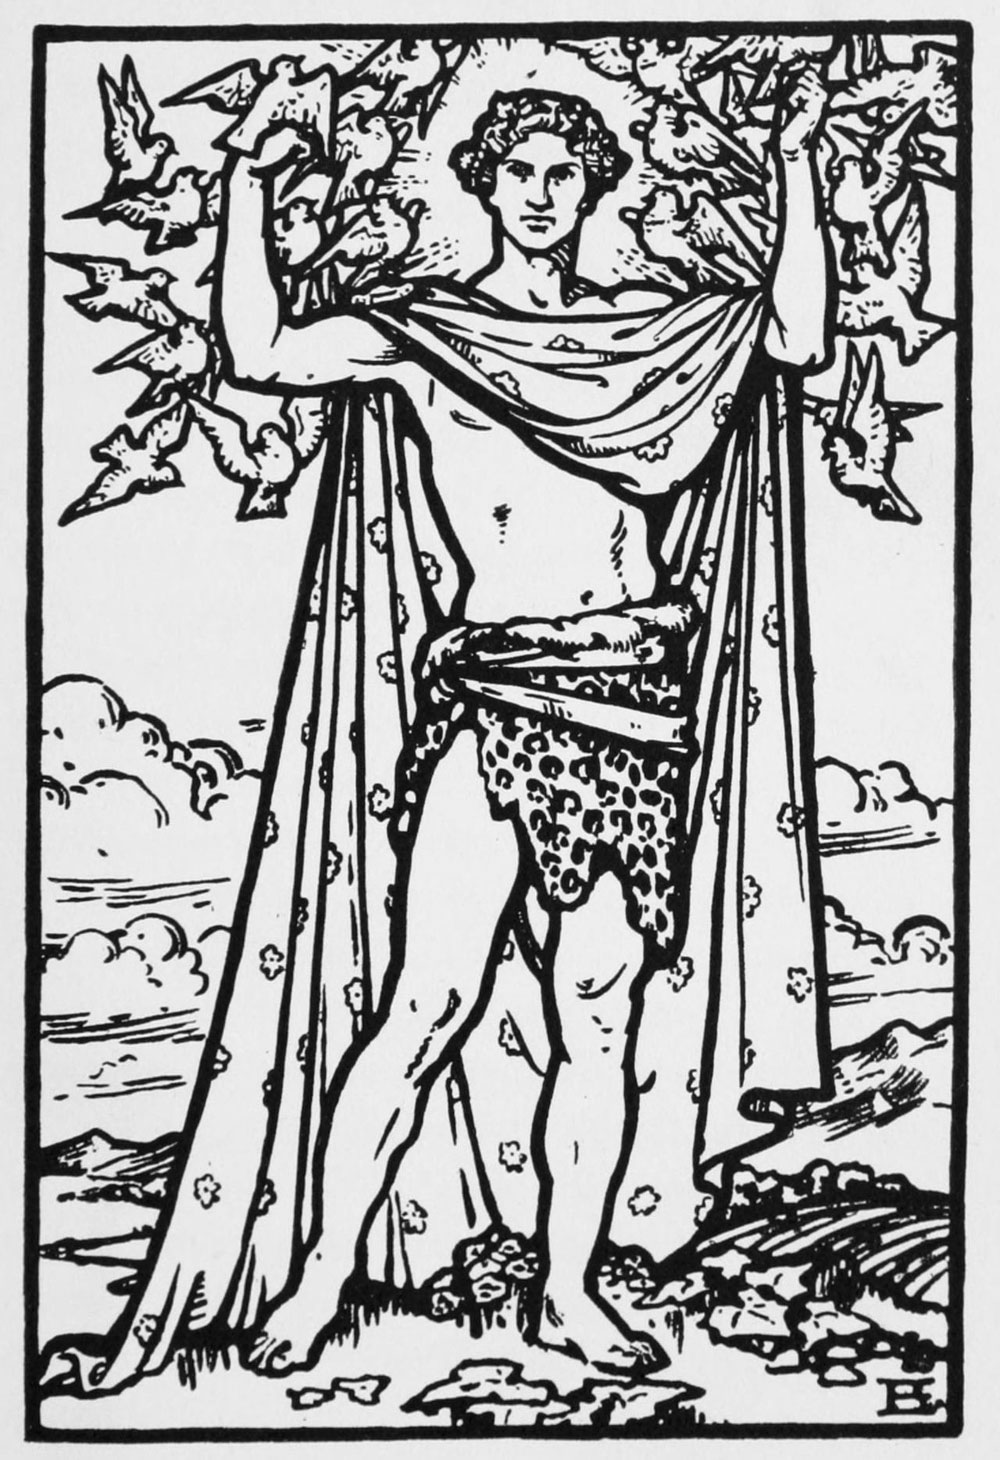 An illustration of Aengus Og at Newgrange, 1914.